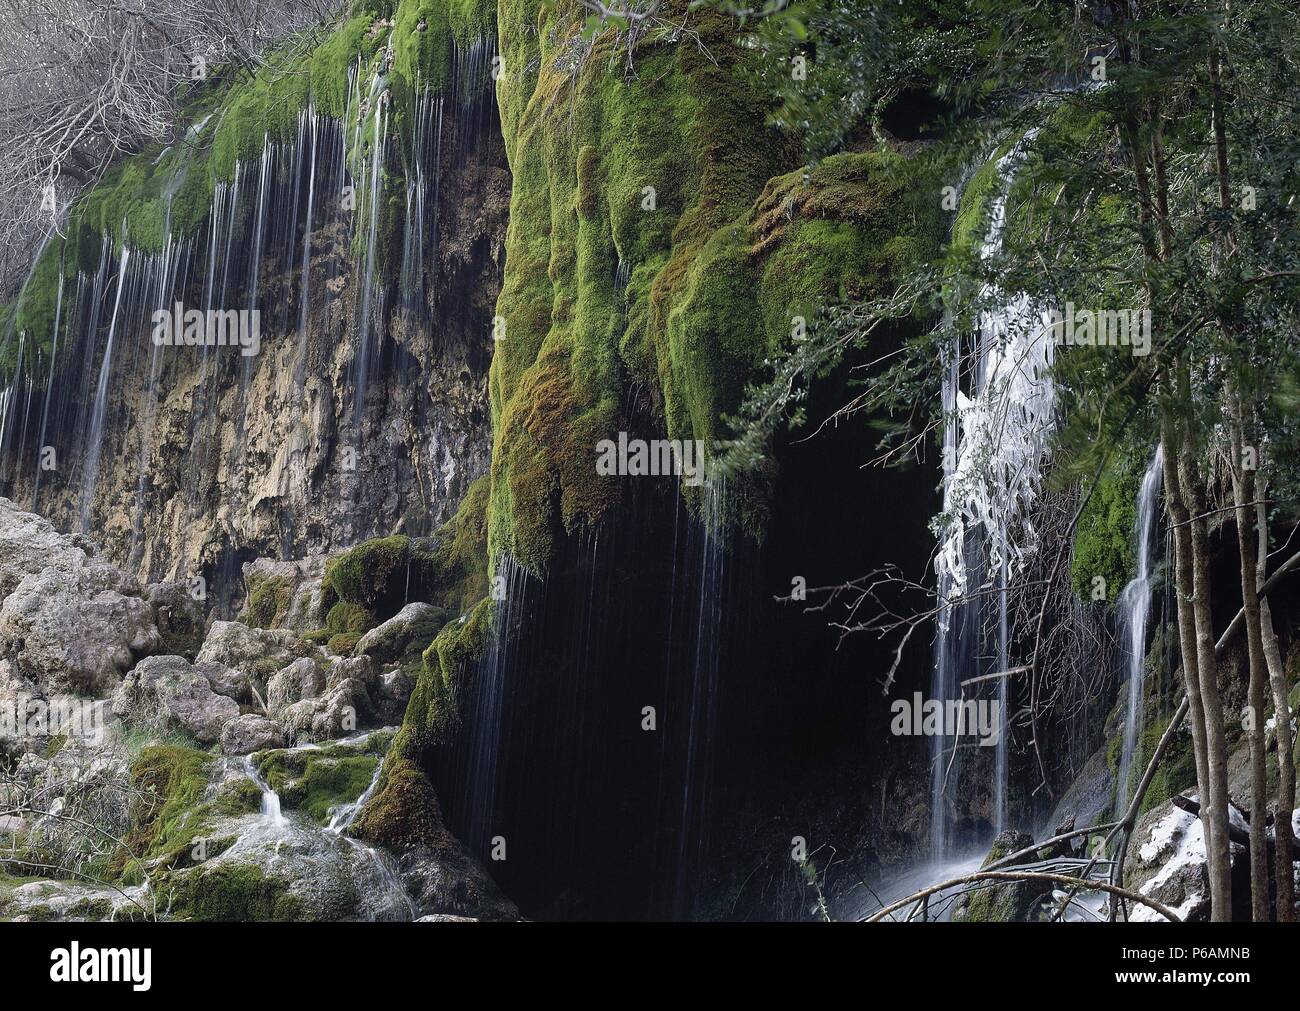 Falls in the born of the river Cuervo. View. Province of Cuenca. Castilla-La Mancha. Spain. Stock Photo